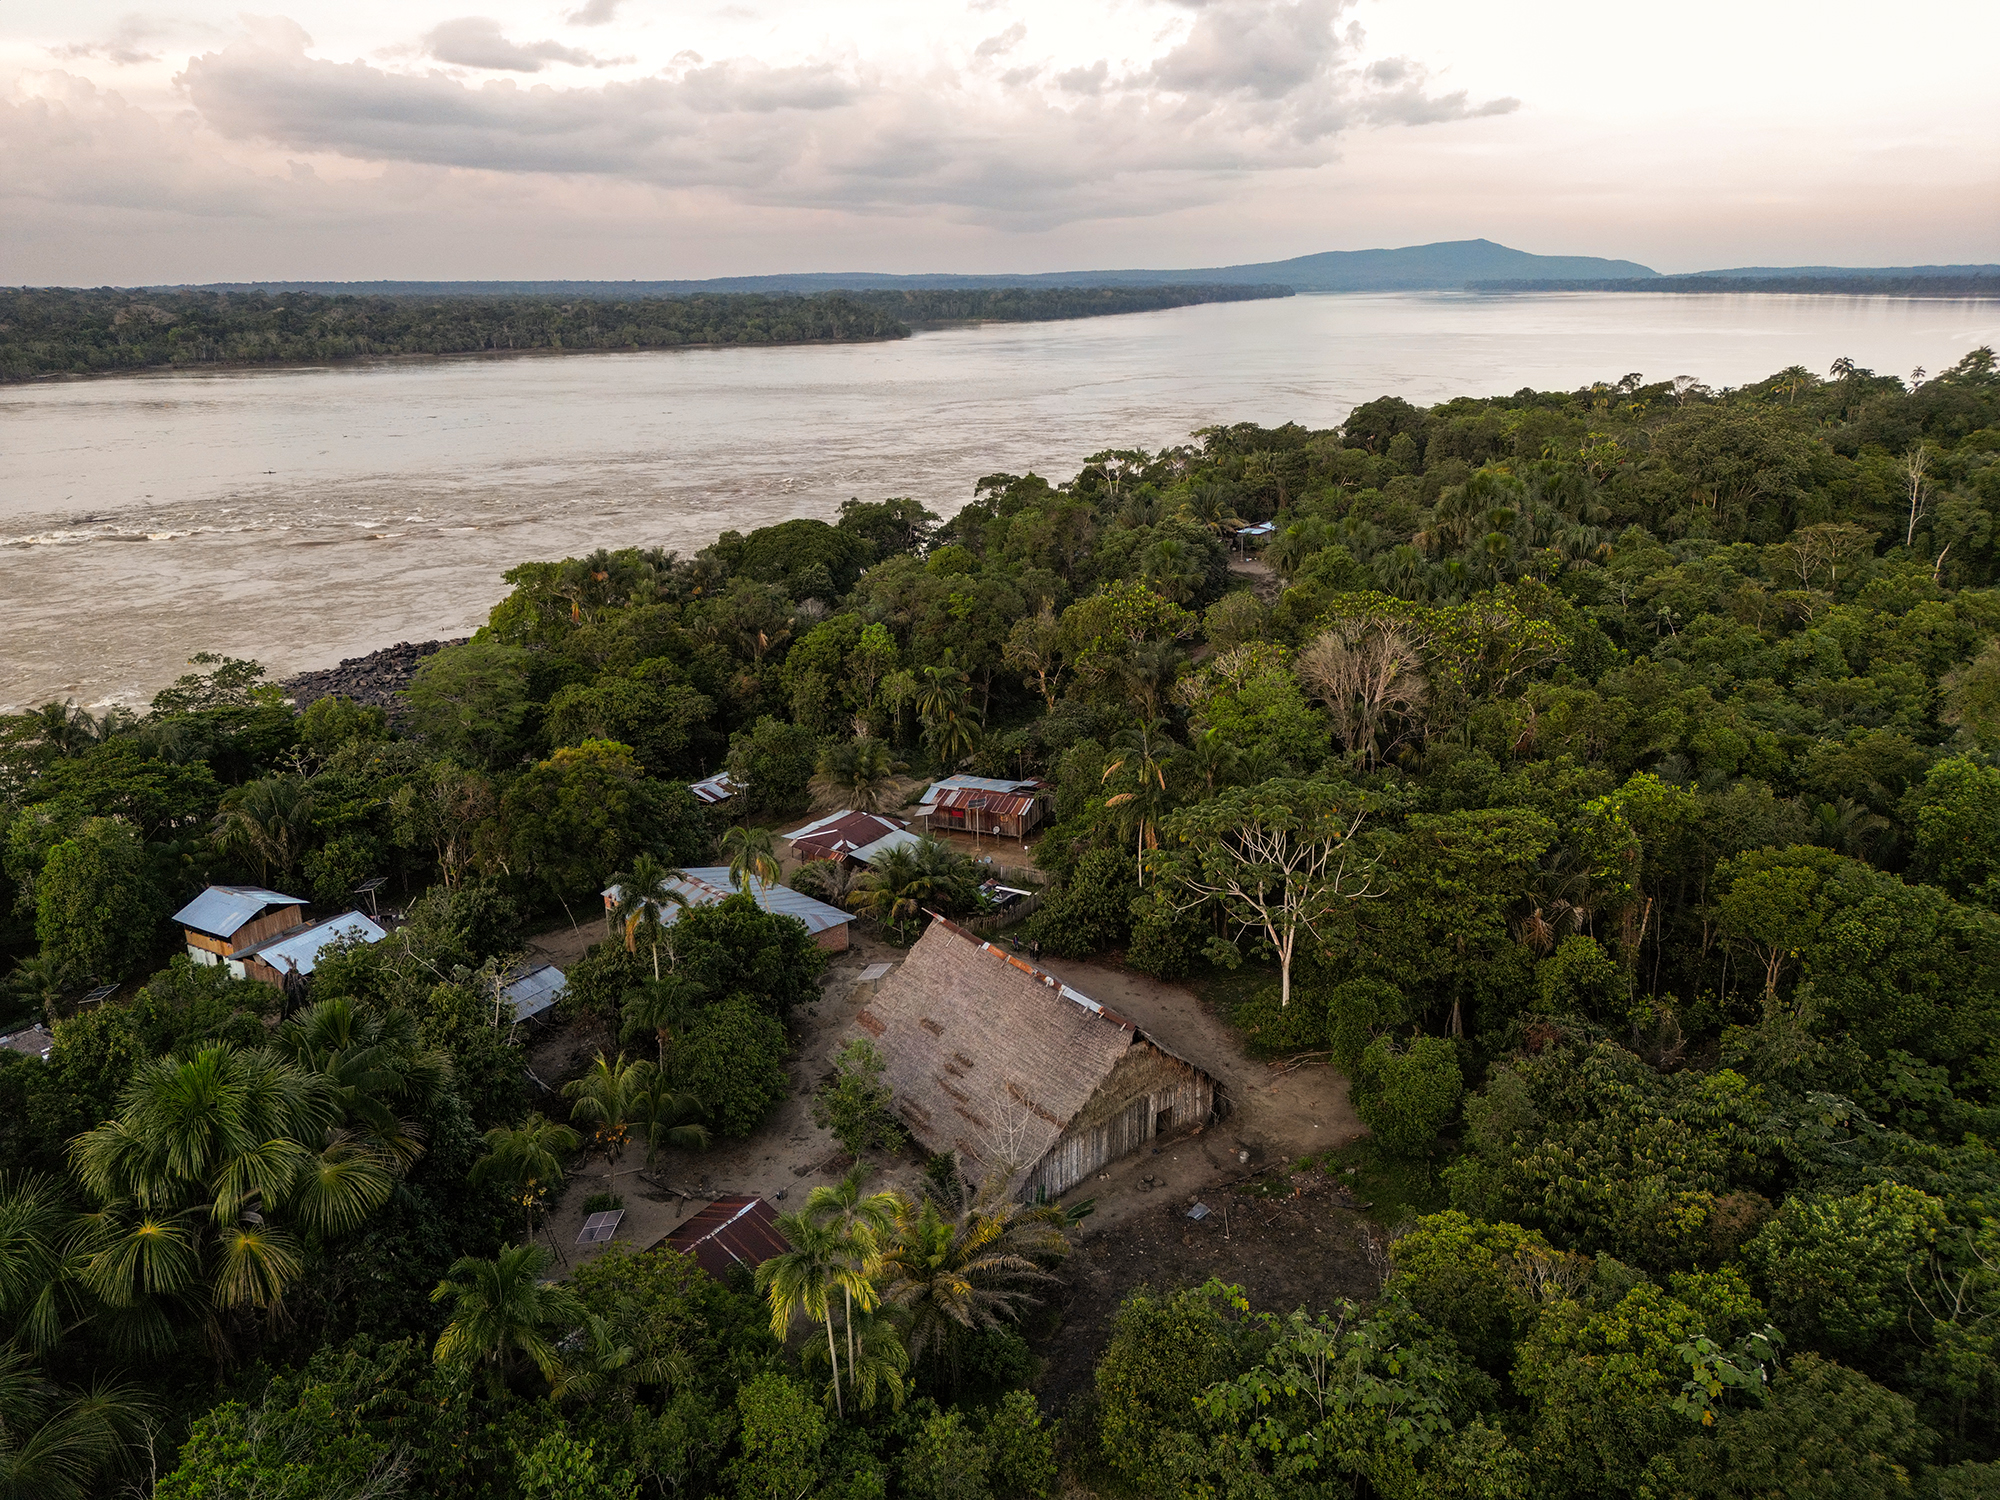 Vista aérea de la maloca de la comunidad de Curare en el resguardo Curare los ingleses. Amazonas. Colombia. Foto: Victor Galeano.